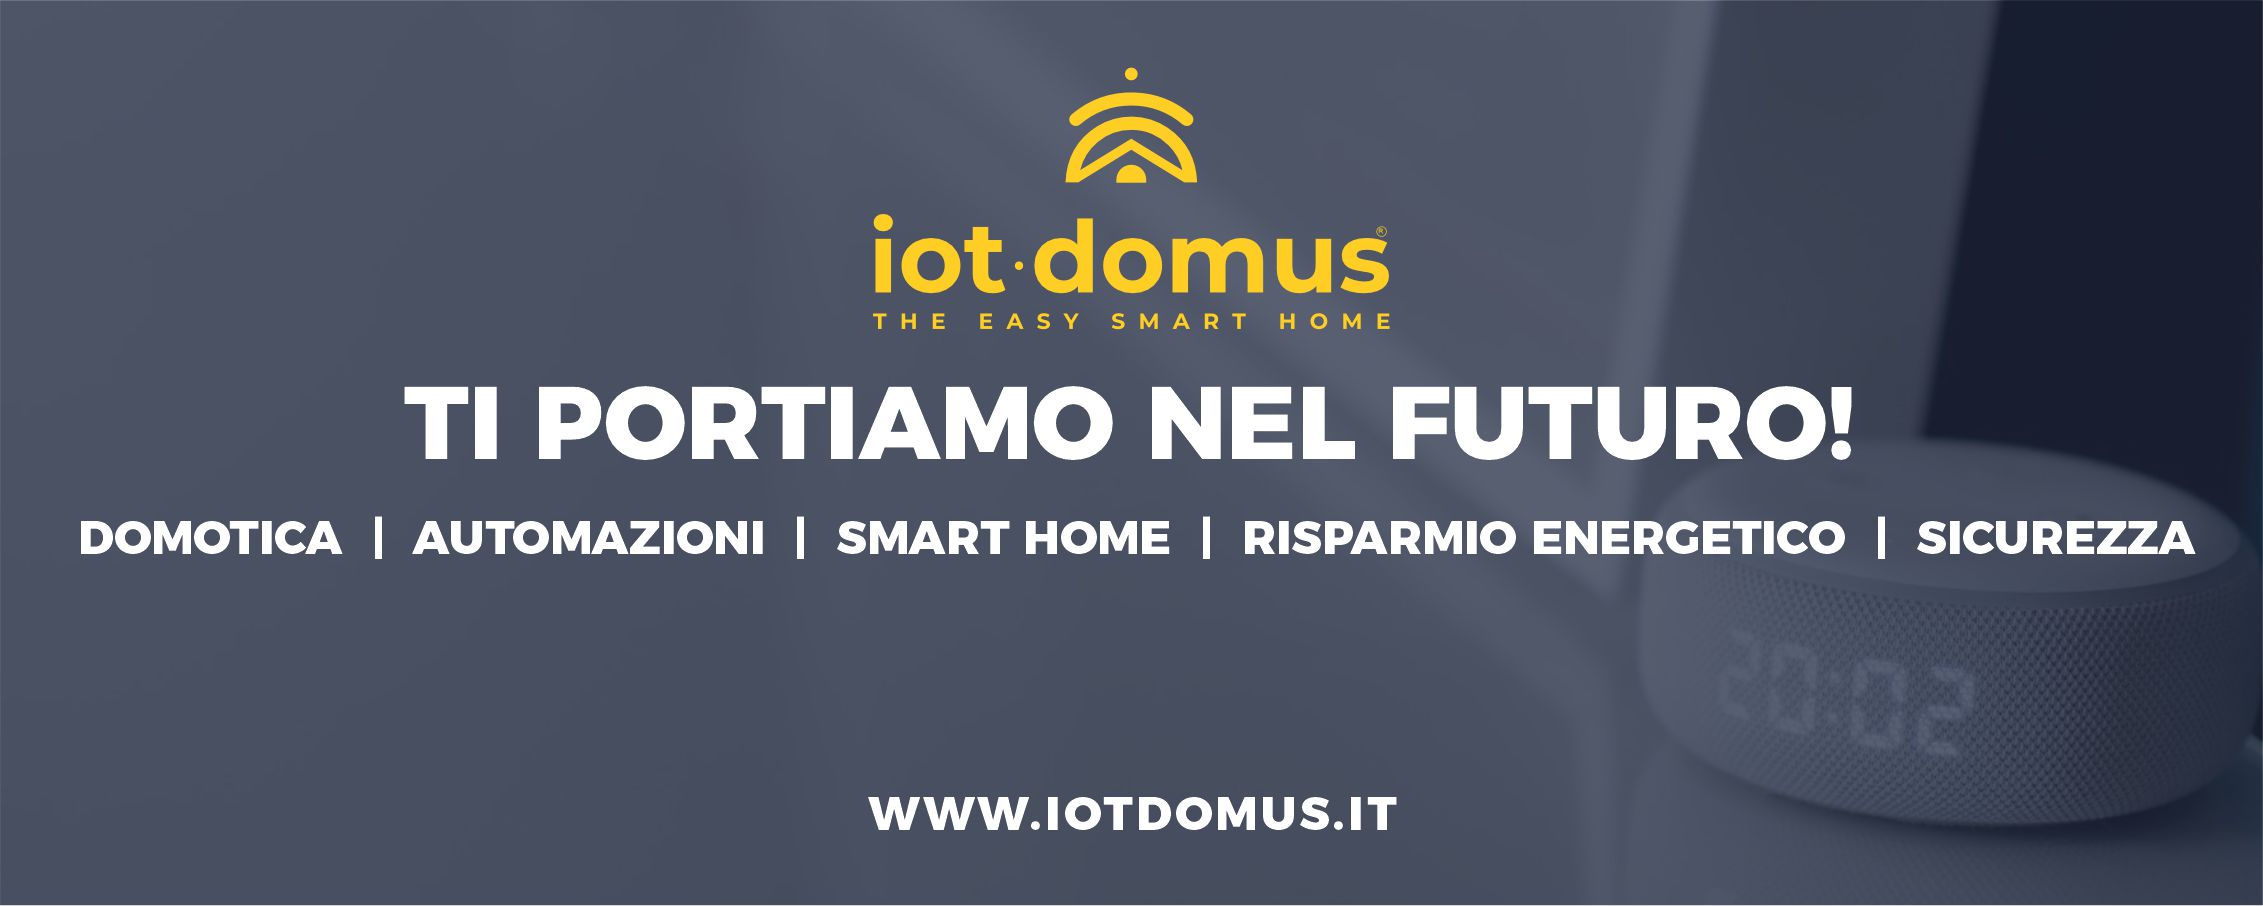 IotDomus - iotdomus italia domotica sicurezza e automazioni